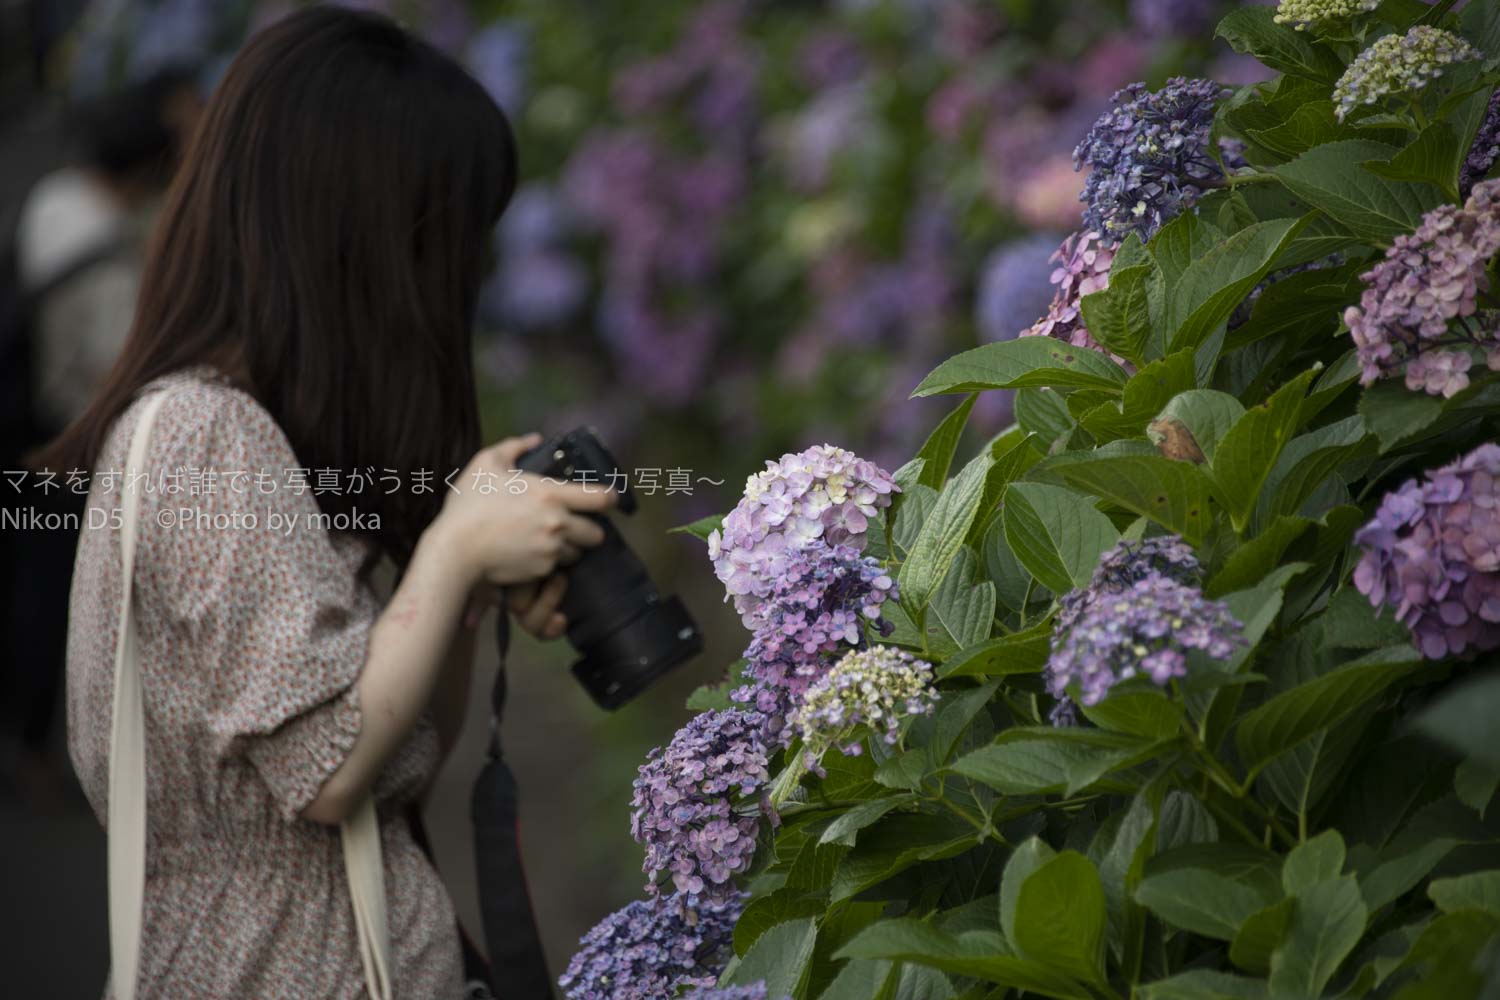 【東京の紫陽花の名所】王子、飛鳥山公園で紫陽花の写真を撮ろう